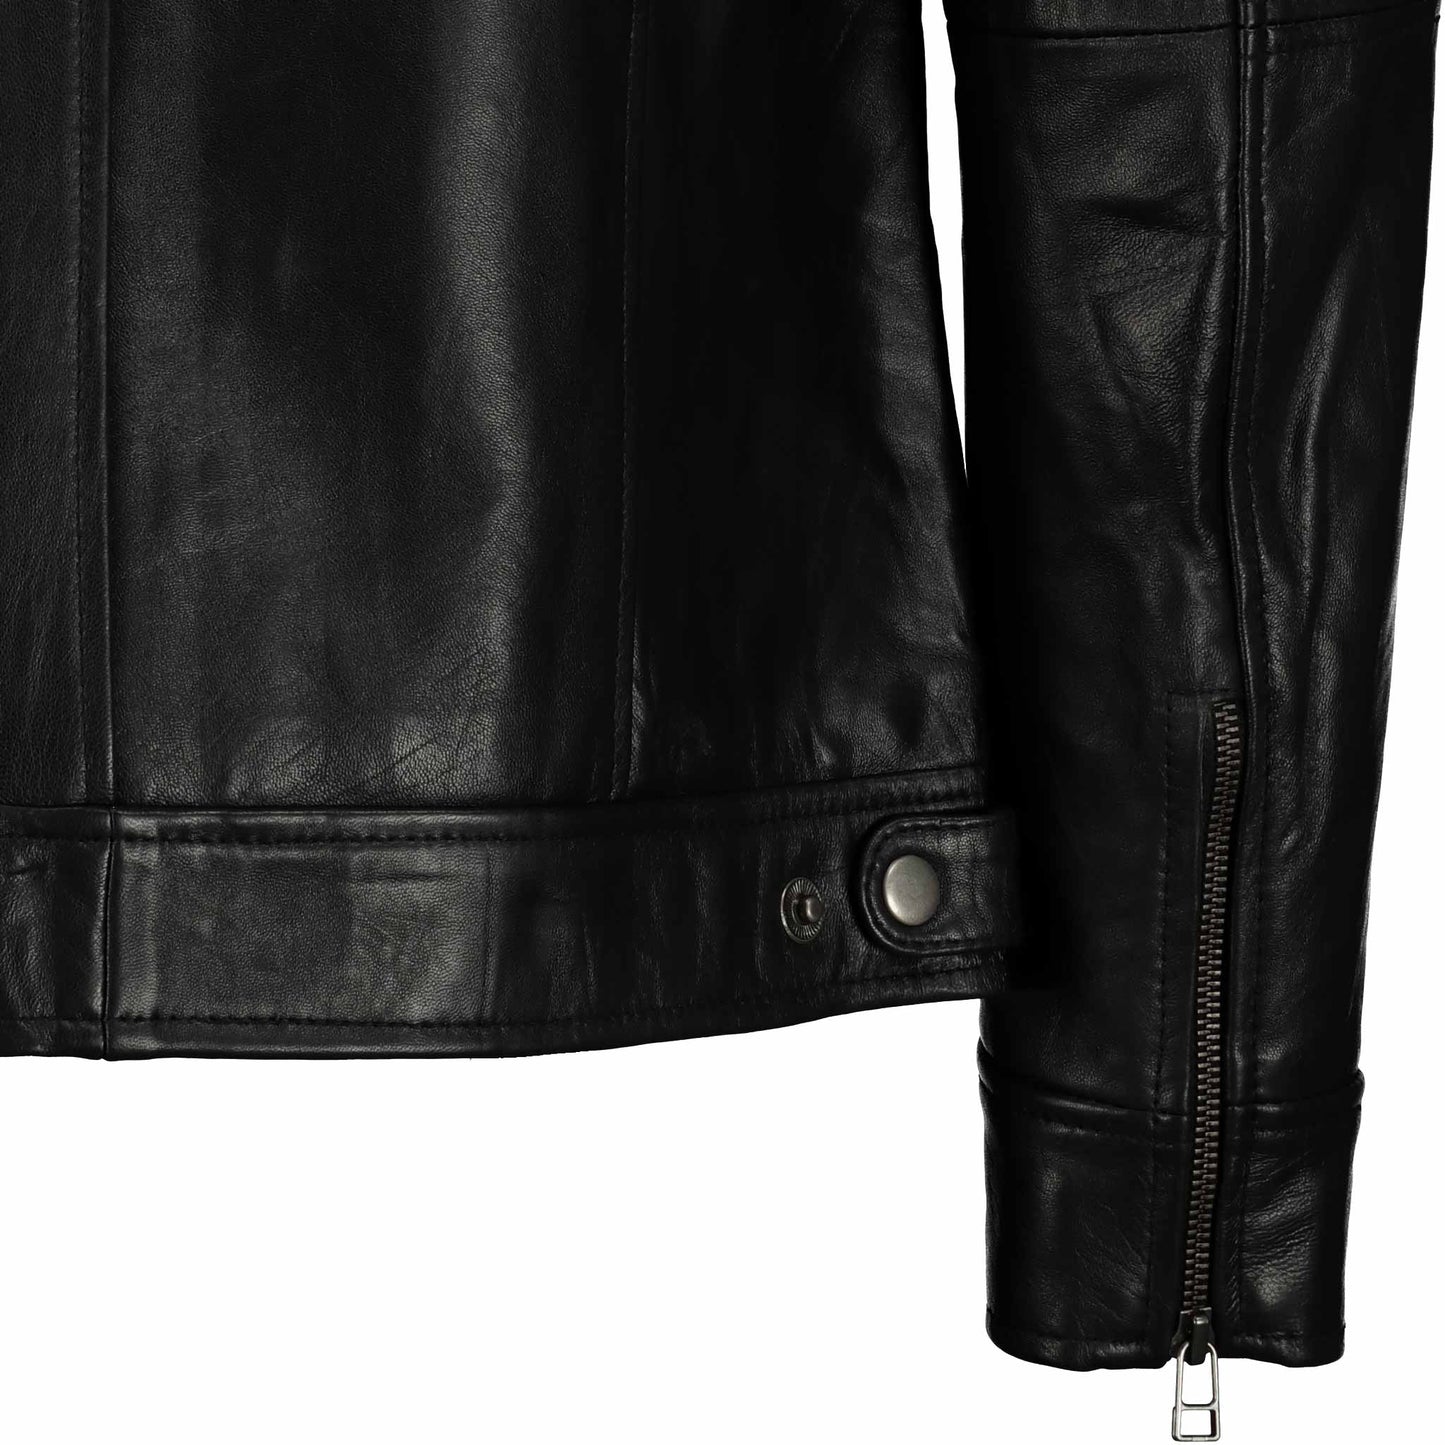 Men's Black Elite Slim Fit leather Jacket (Black)- Supreme Leather Supreme Leather